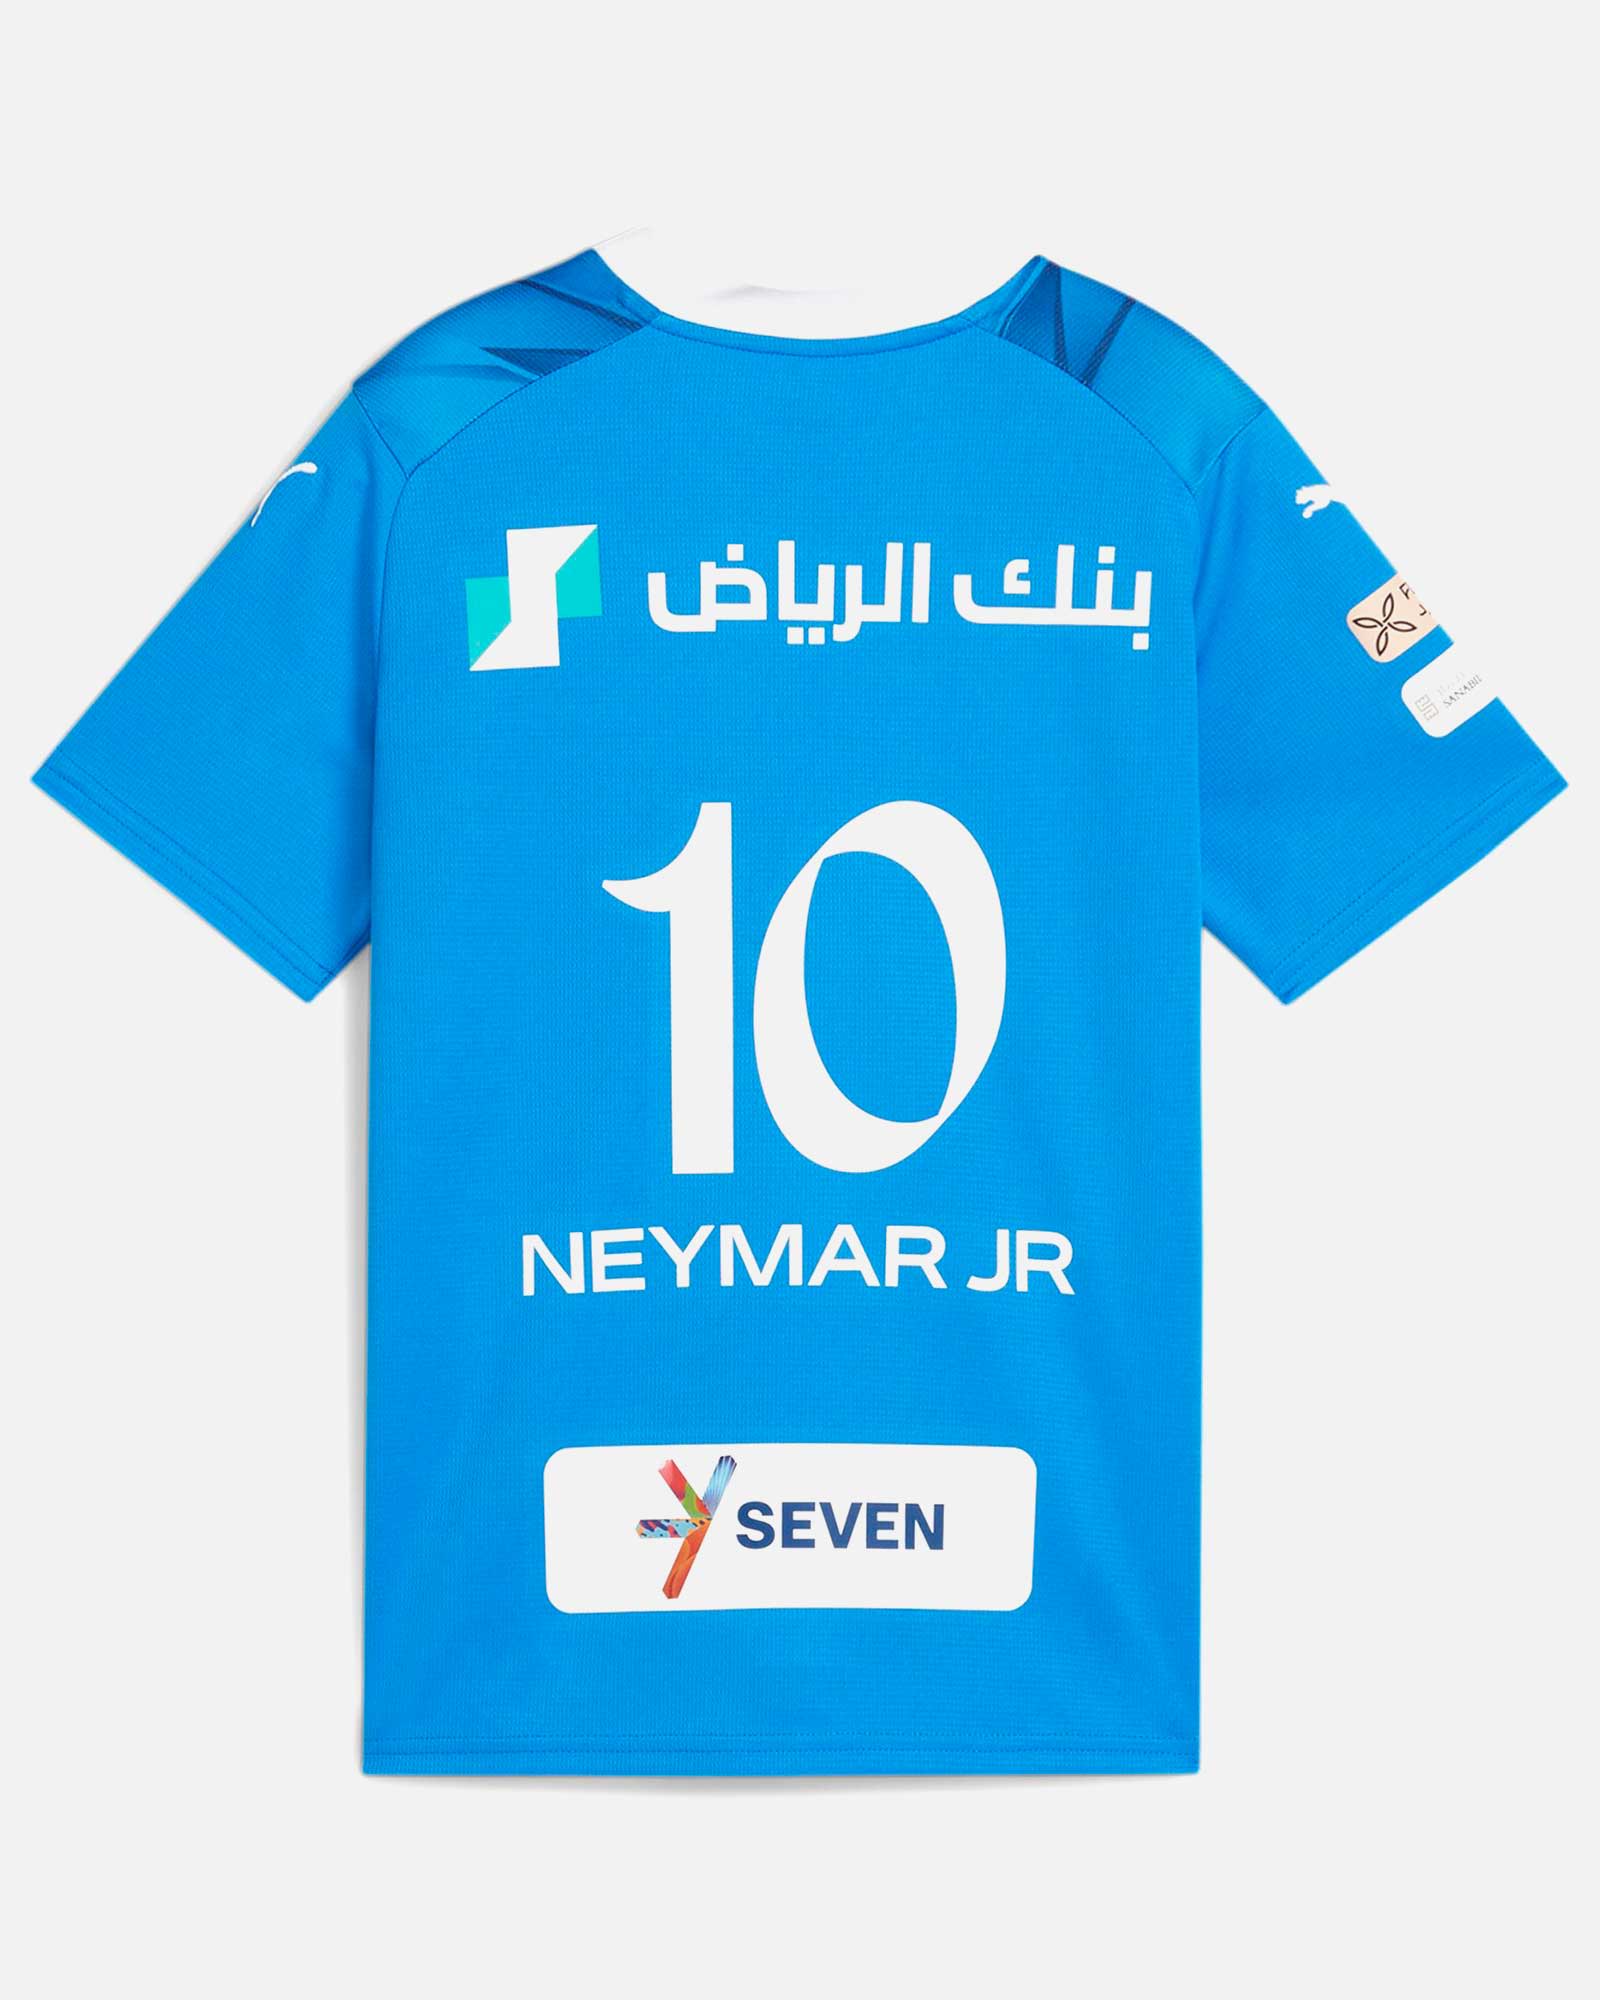 Camiseta Neymar Al Hilal Ranwey Fr221 T14 niño Largas